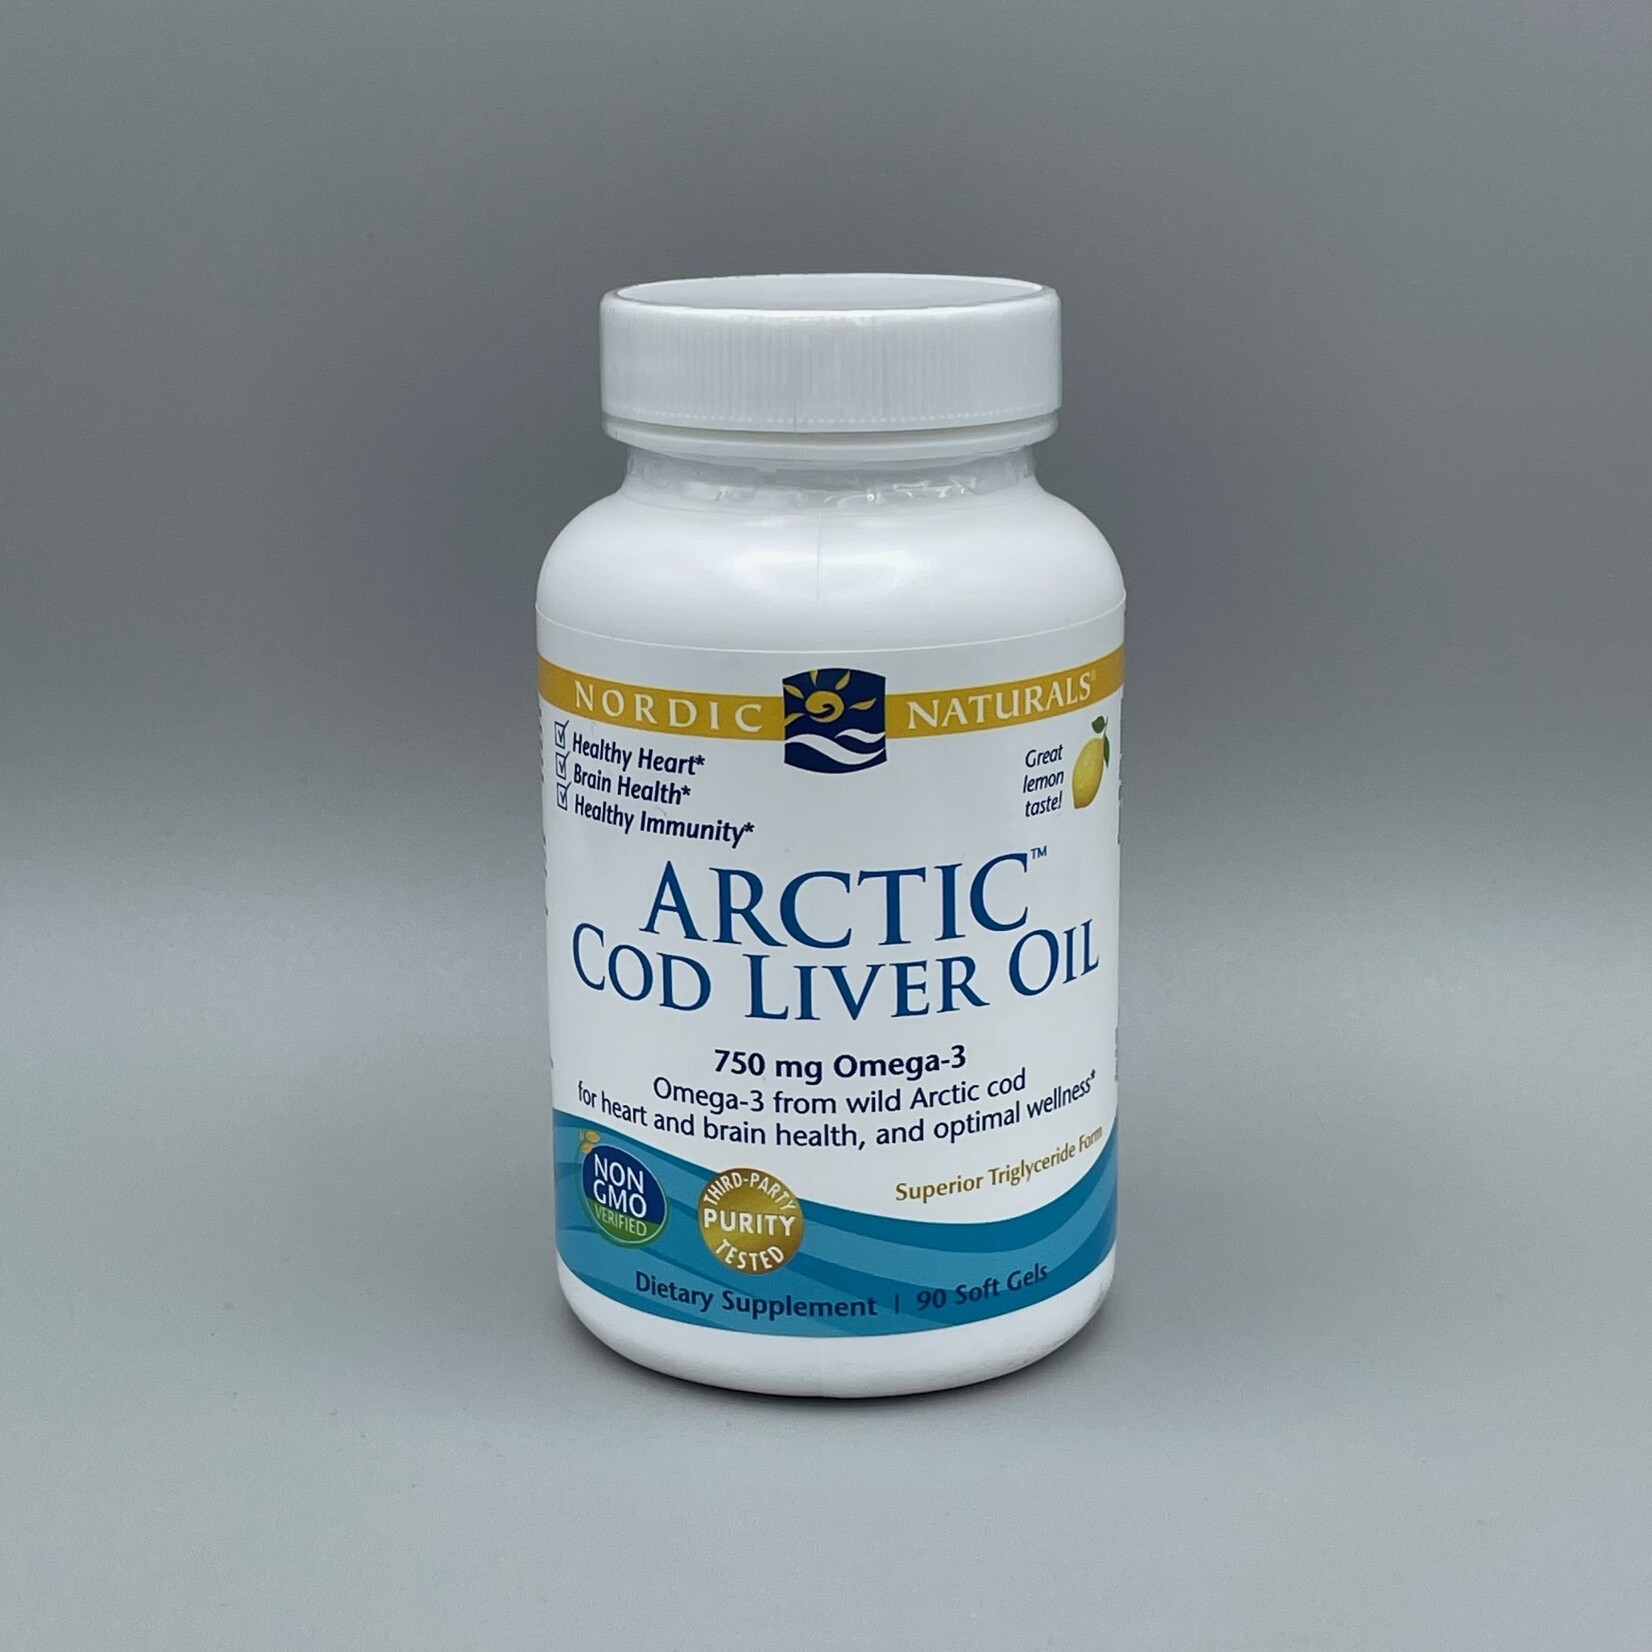 Nordic Naturals Arctic Cod Liver Oil (750 mg Omega-3, Lemon) - 1,000mg,  90 Softgels